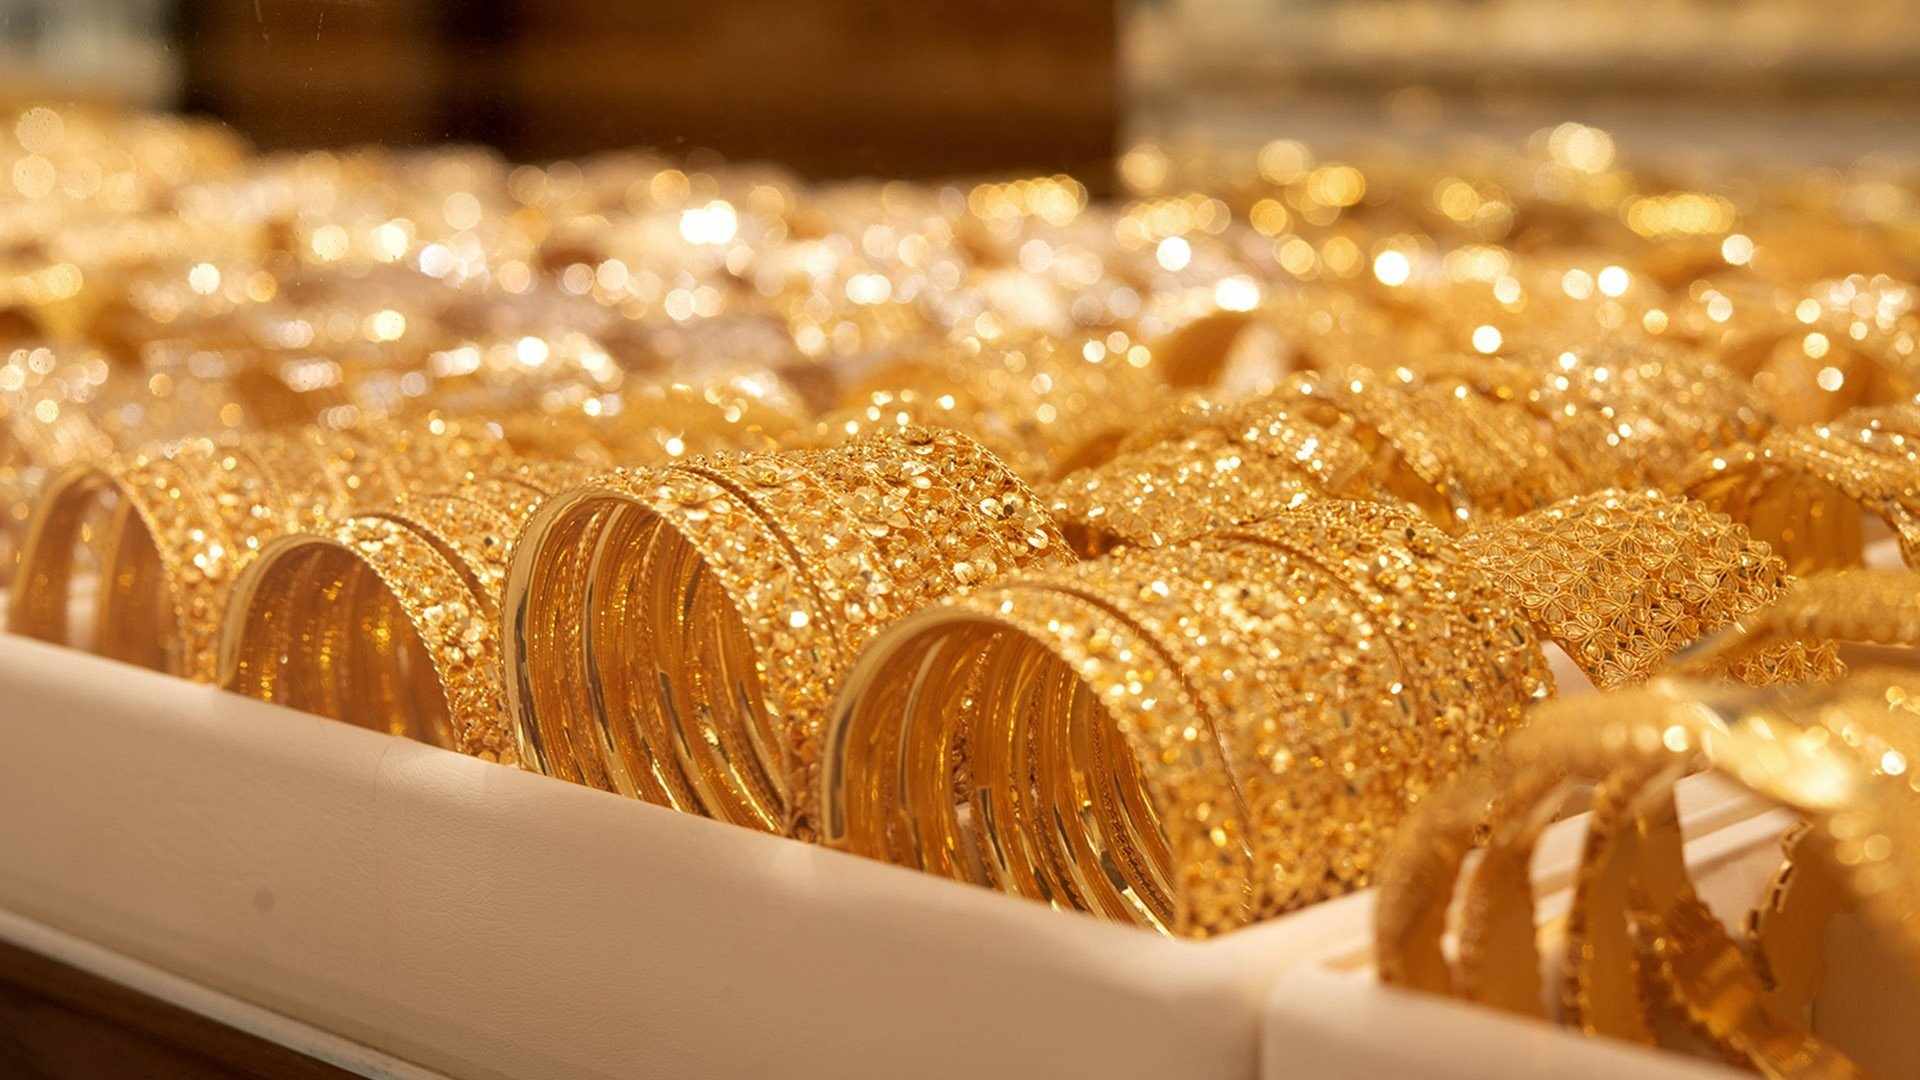 لسة سعره هينزل.. أسعار الفائدة الأمريكية تؤثر على أسعار الذهب في مصر